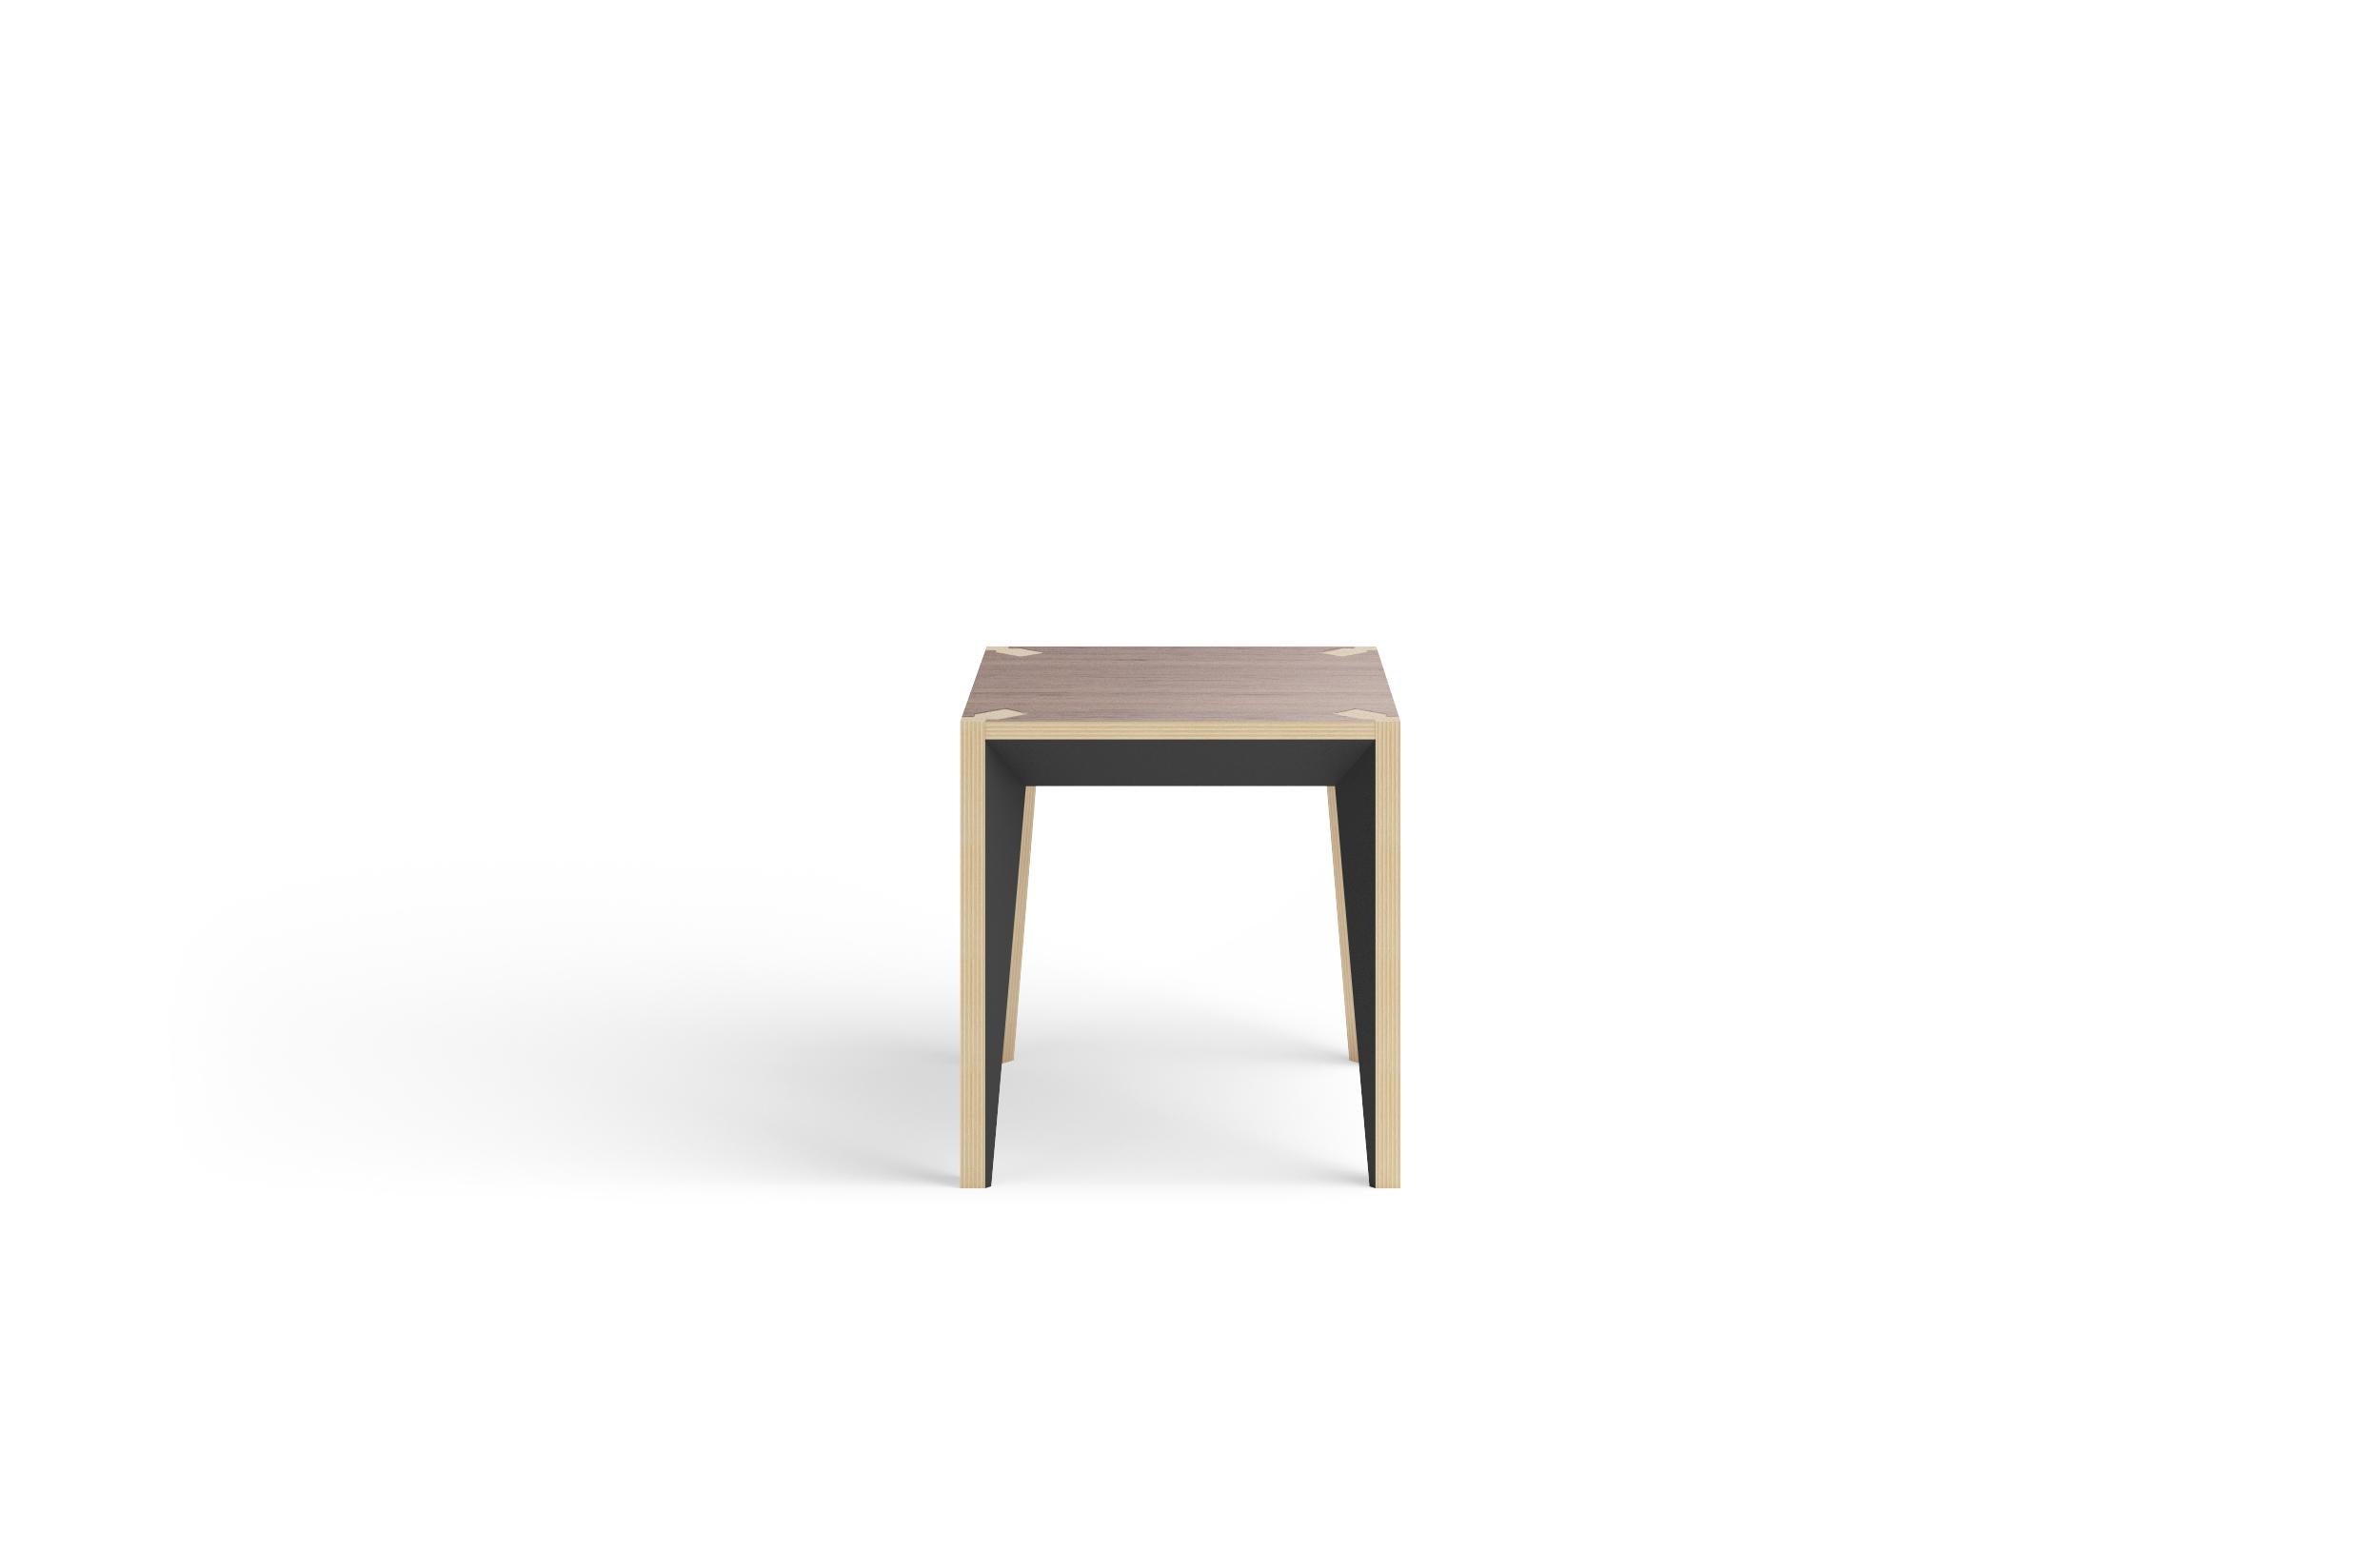 Dieser minimalistische, vielseitige Beistelltisch oder Hocker gehört zur MiMi-Serie und setzt Akzente in Haus und Büro. Die klare, facettierte Geometrie und die lackierten Oberflächen verleihen ihm Tiefe und Raffinesse, während die Platte aus